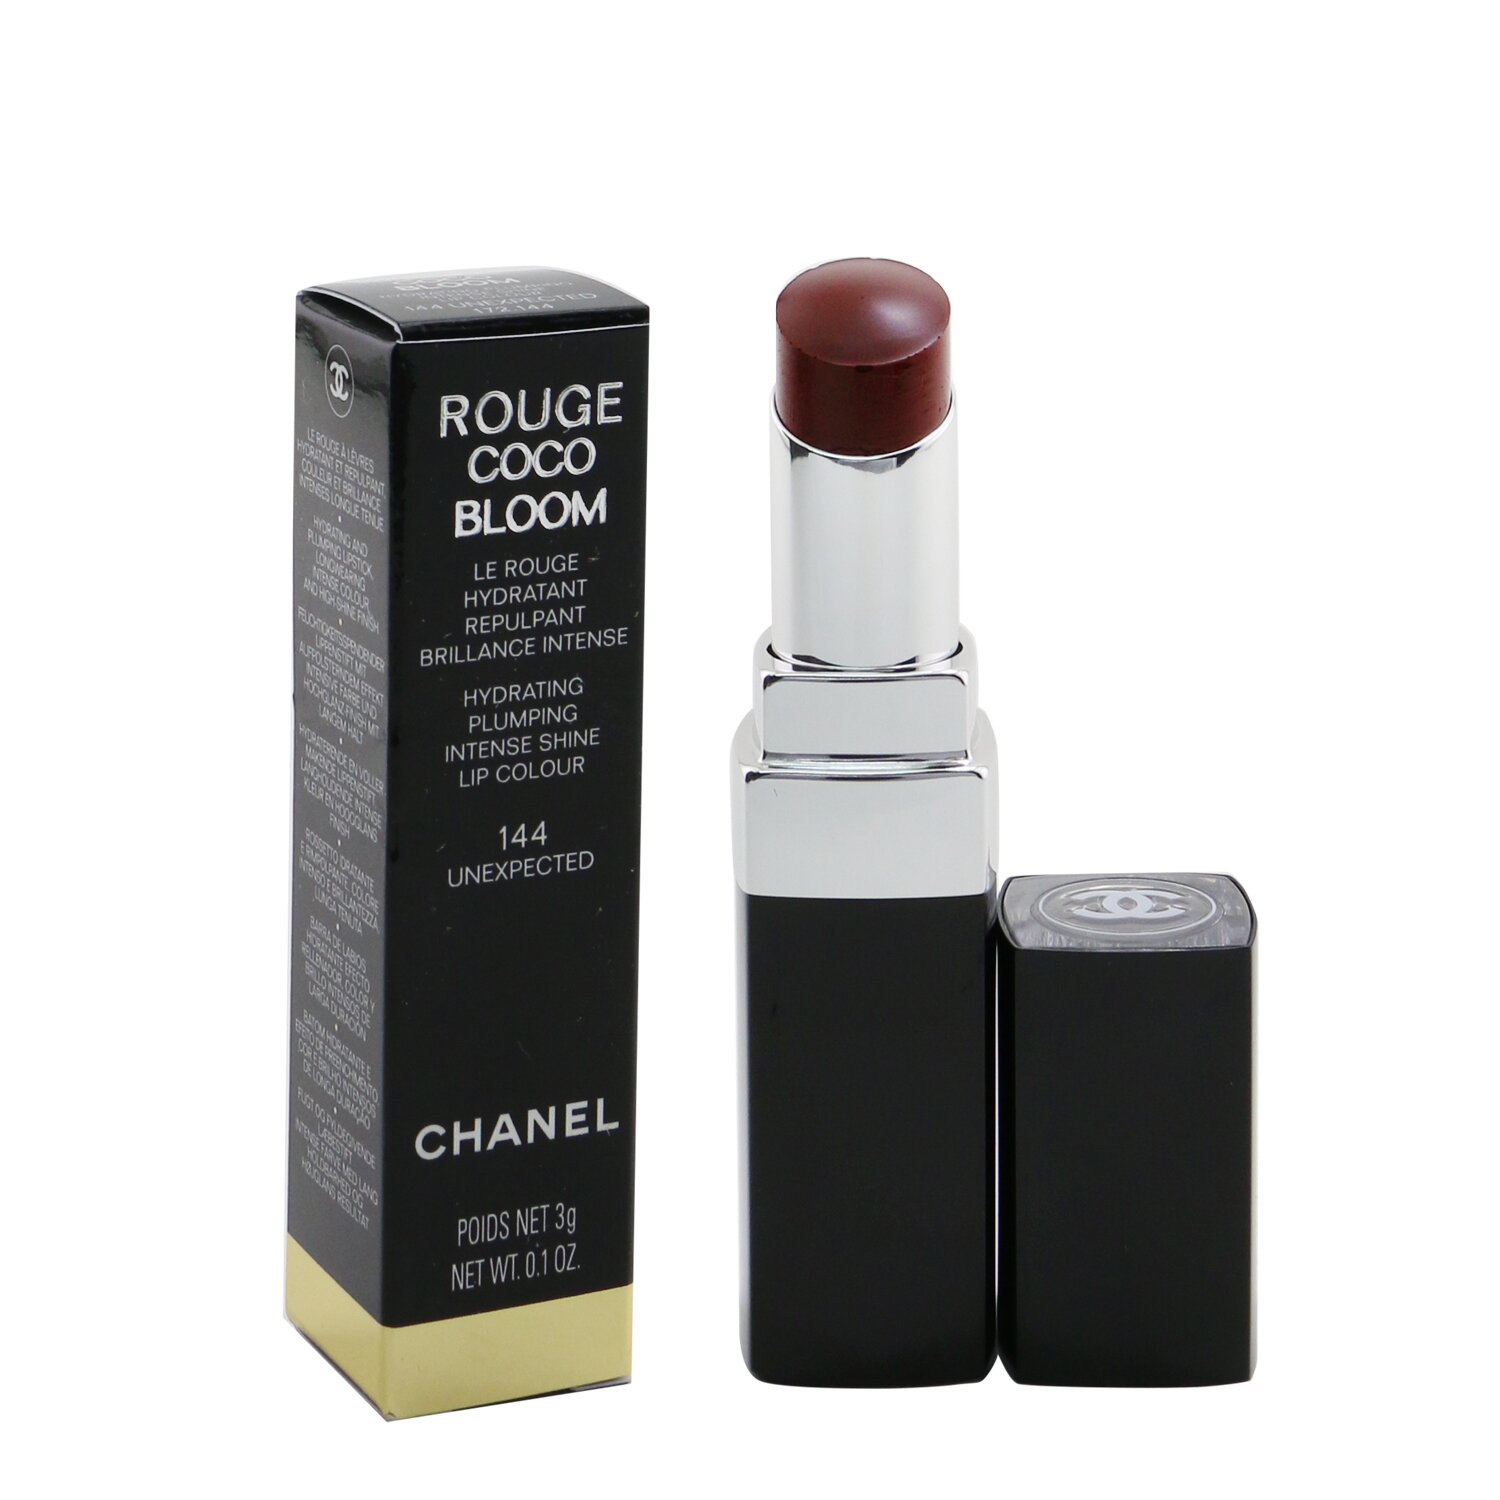 シャネル リップスティック Chanel 口紅 Rouge Coco Bloom Hydrating Plumping Intense Shine Lip Colour - # 148 Surprise 3g メイクアップ リップ 落ちにくい 誕生日プレゼント ギフト 人気 ブランド コスメ